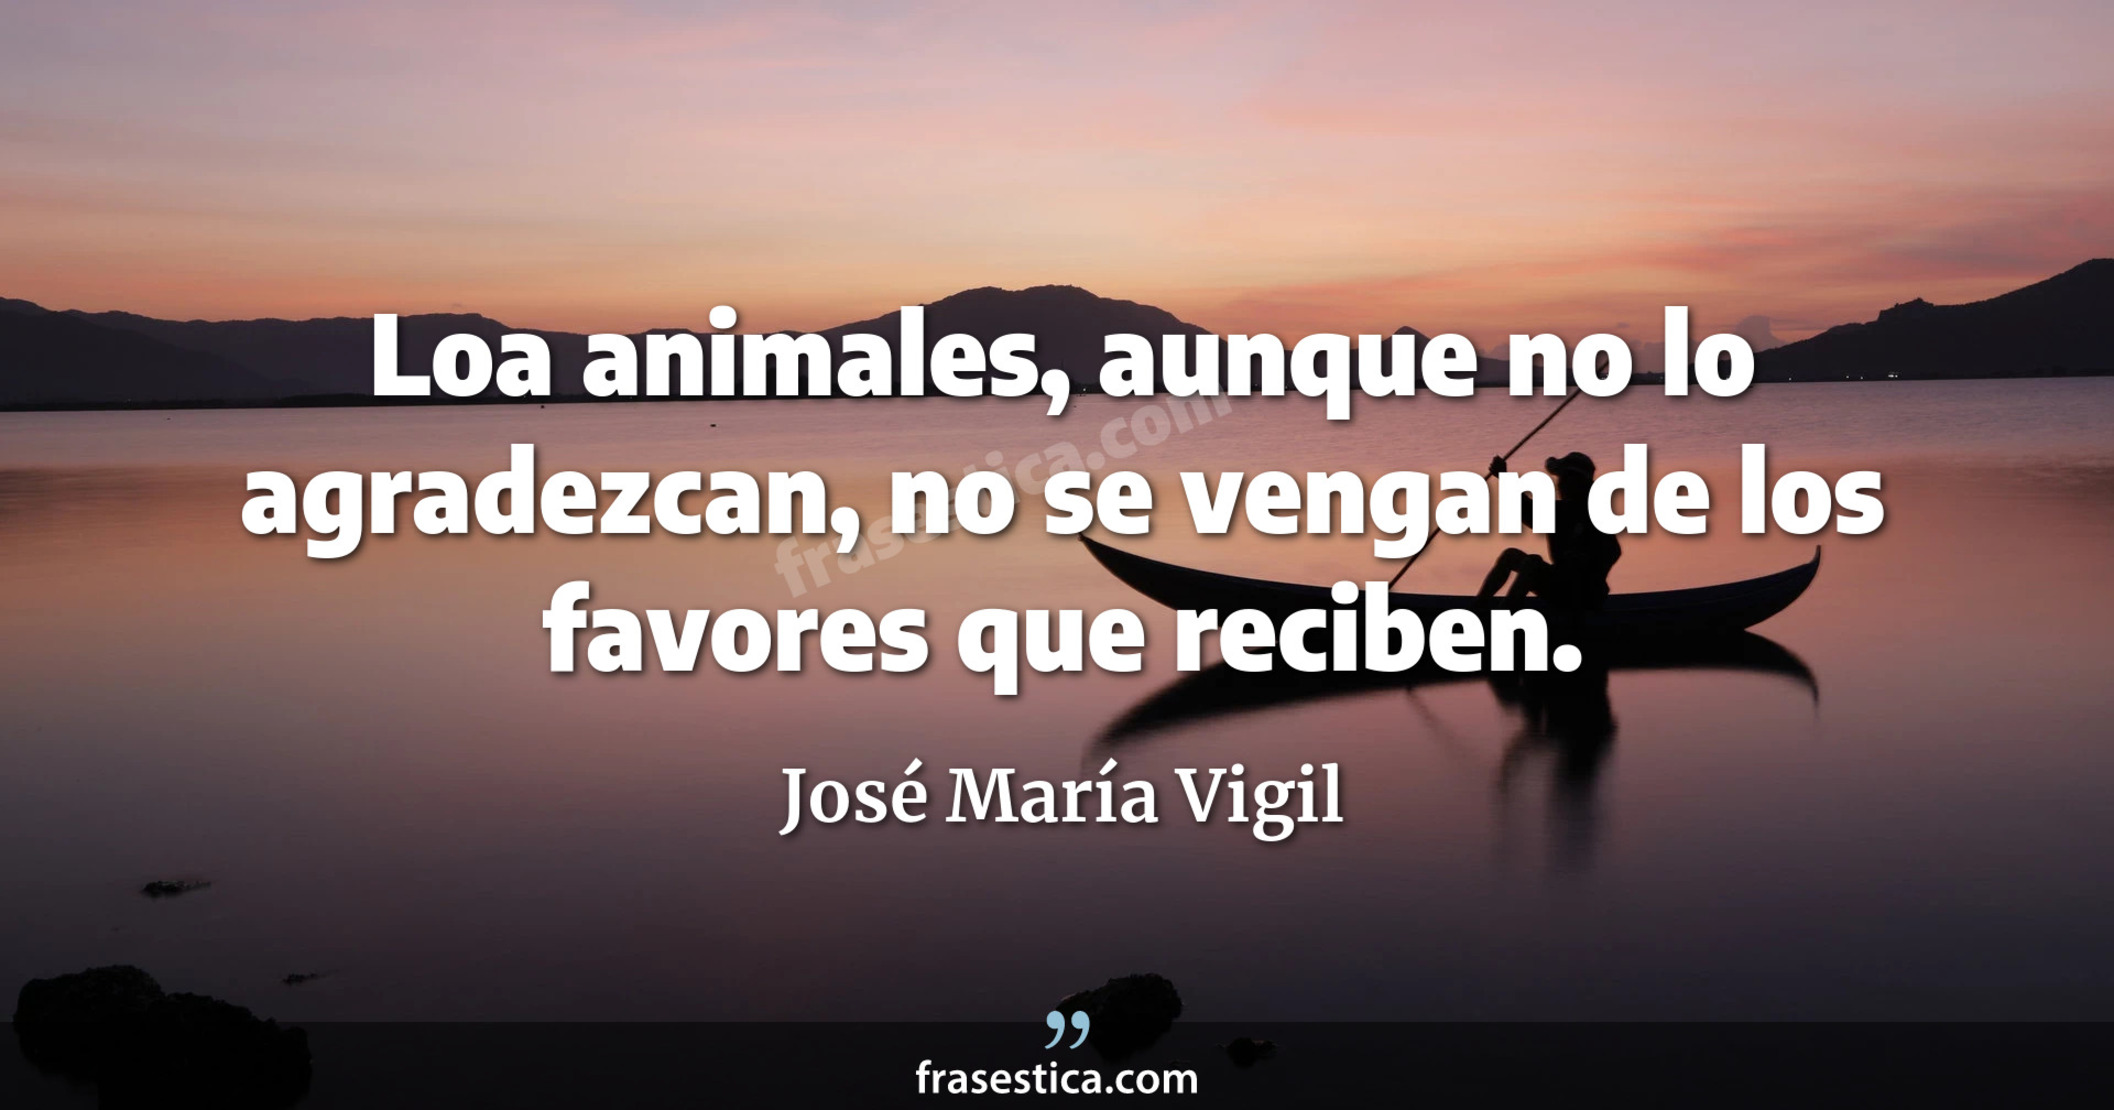 Loa animales, aunque no lo agradezcan, no se vengan de los favores que reciben. - José María Vigil